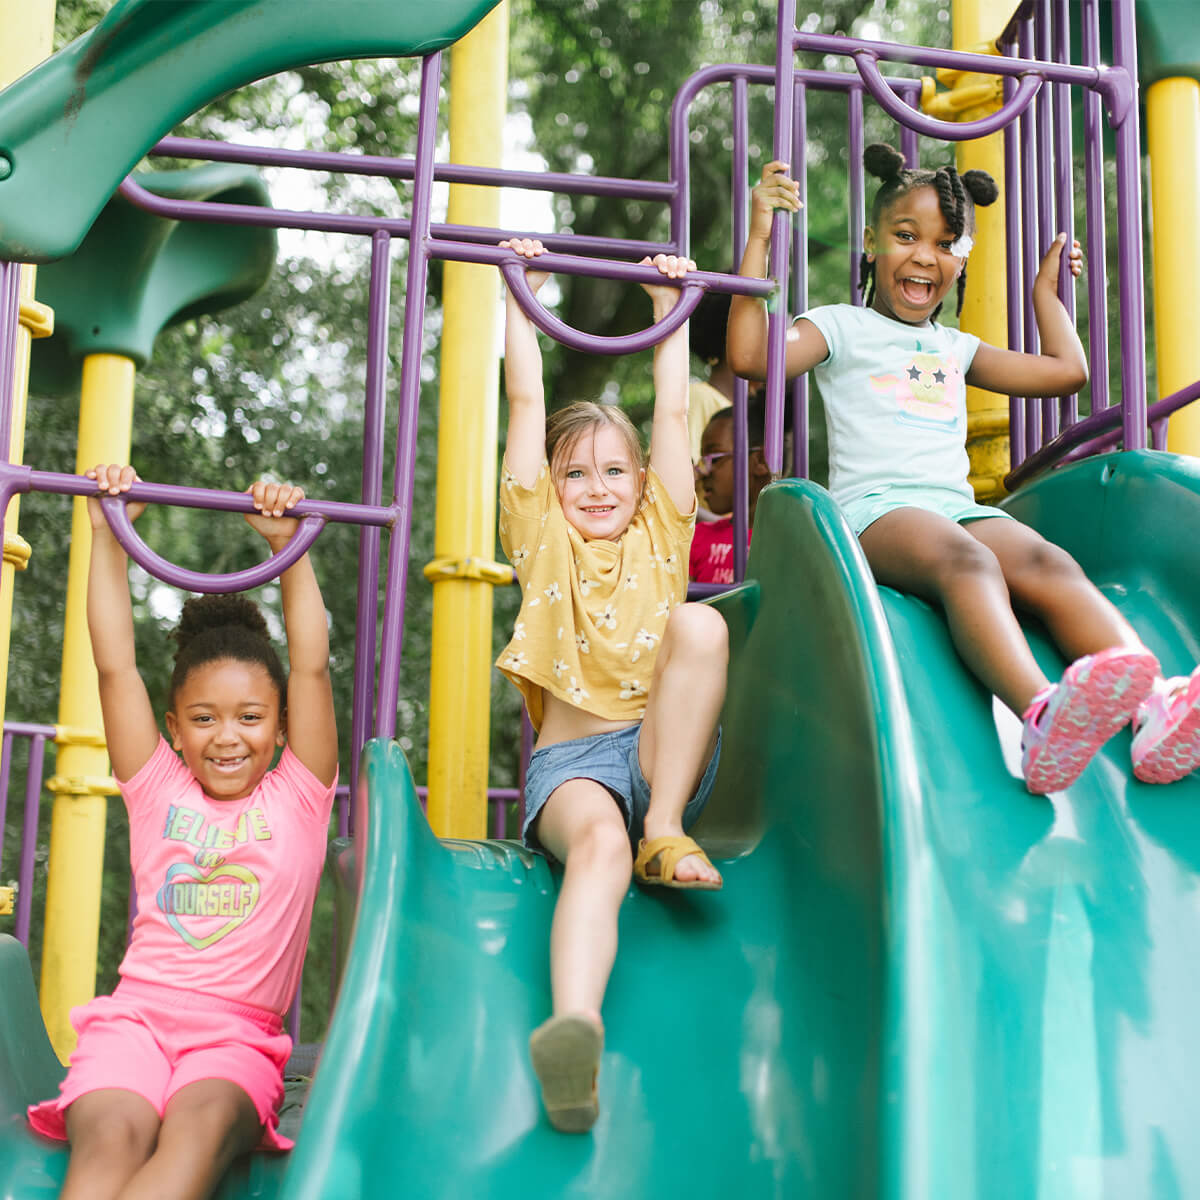 Three children sliding down a park's playground slide set